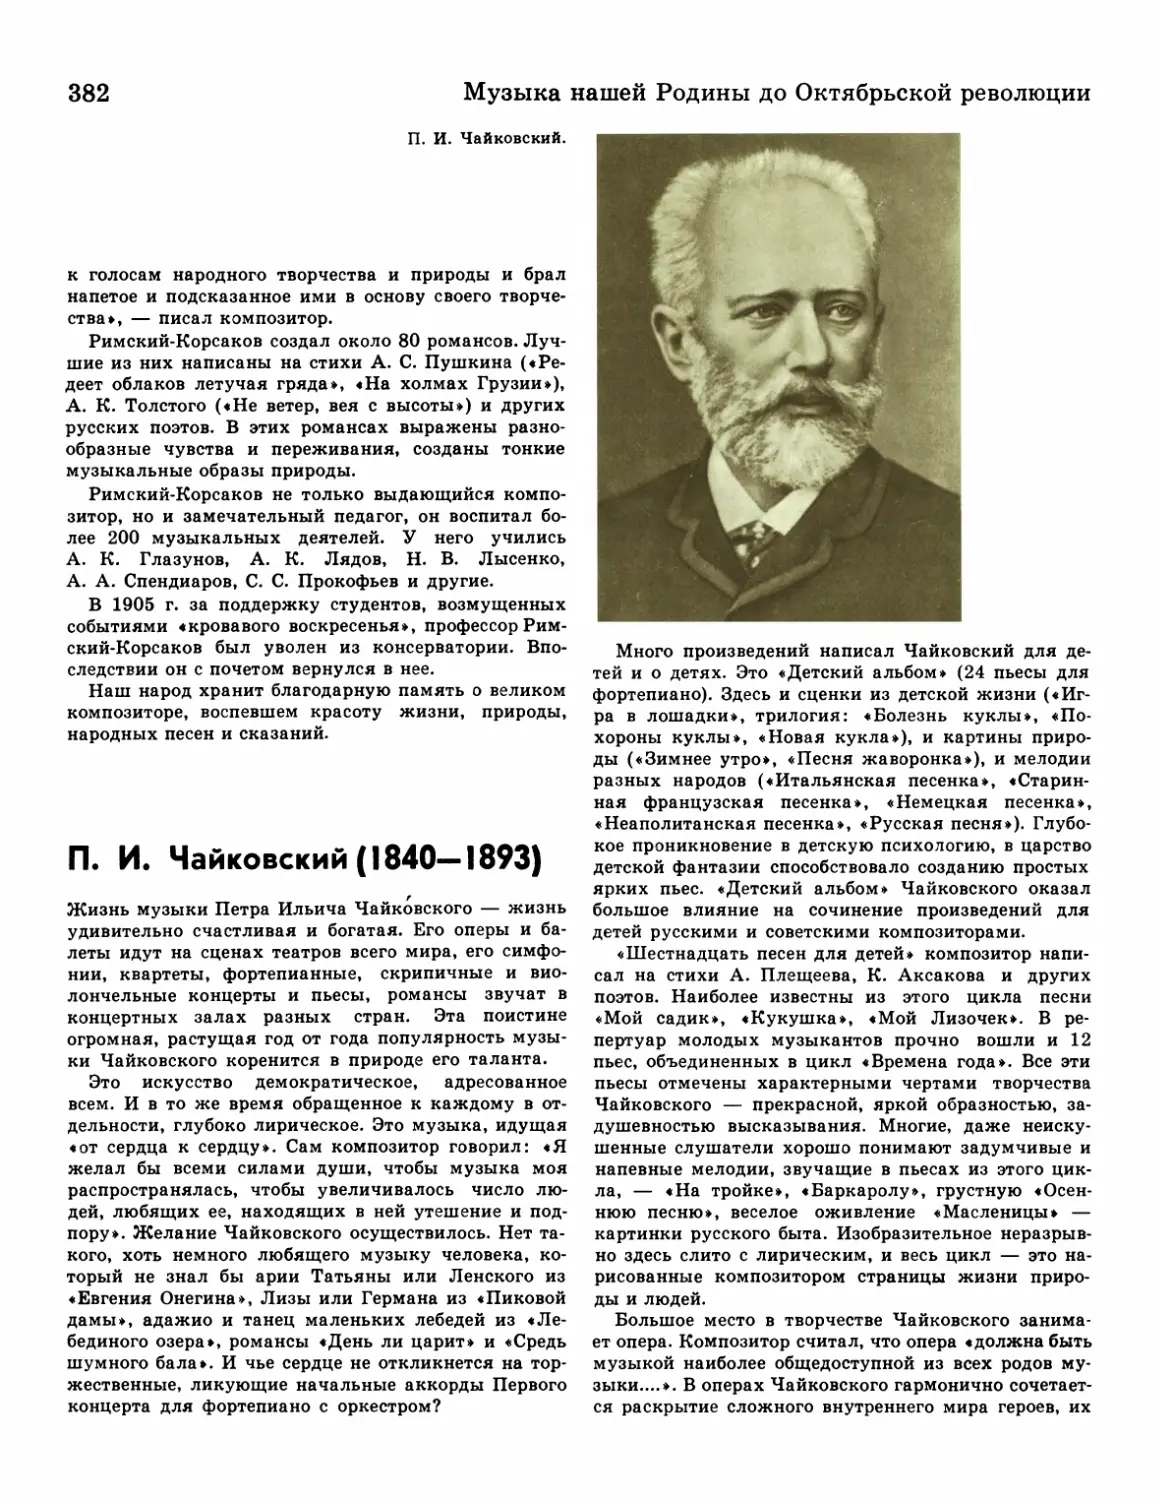 П. И.Чайковский